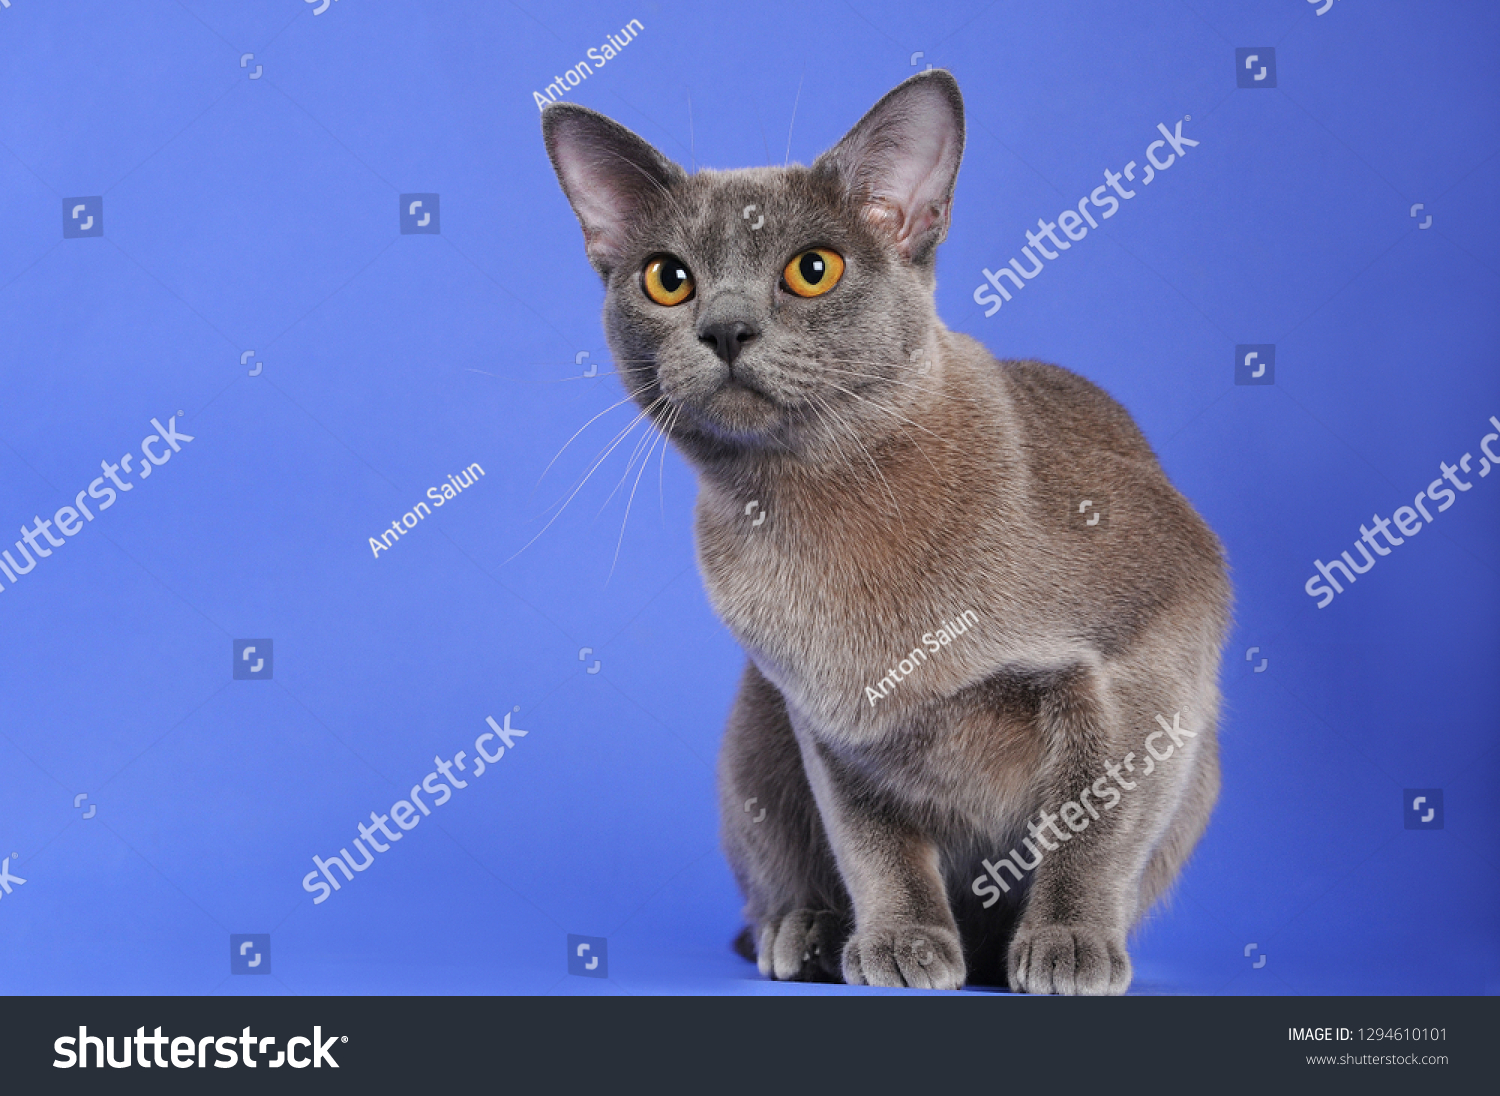 Бурманская кошка или русская голубая кошка